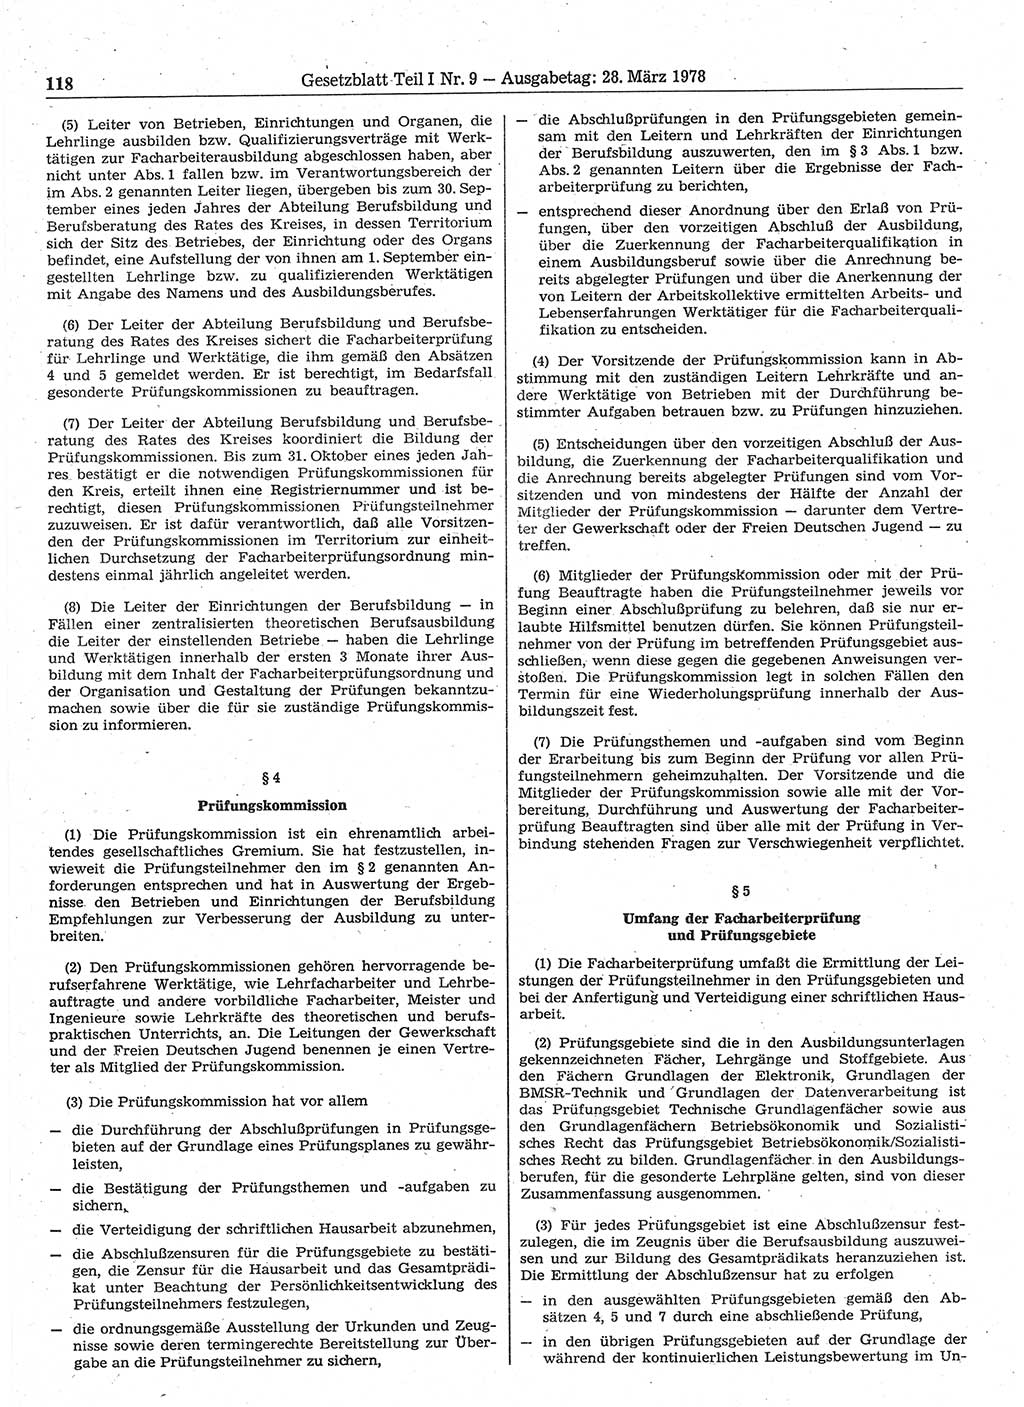 Gesetzblatt (GBl.) der Deutschen Demokratischen Republik (DDR) Teil Ⅰ 1978, Seite 118 (GBl. DDR Ⅰ 1978, S. 118)